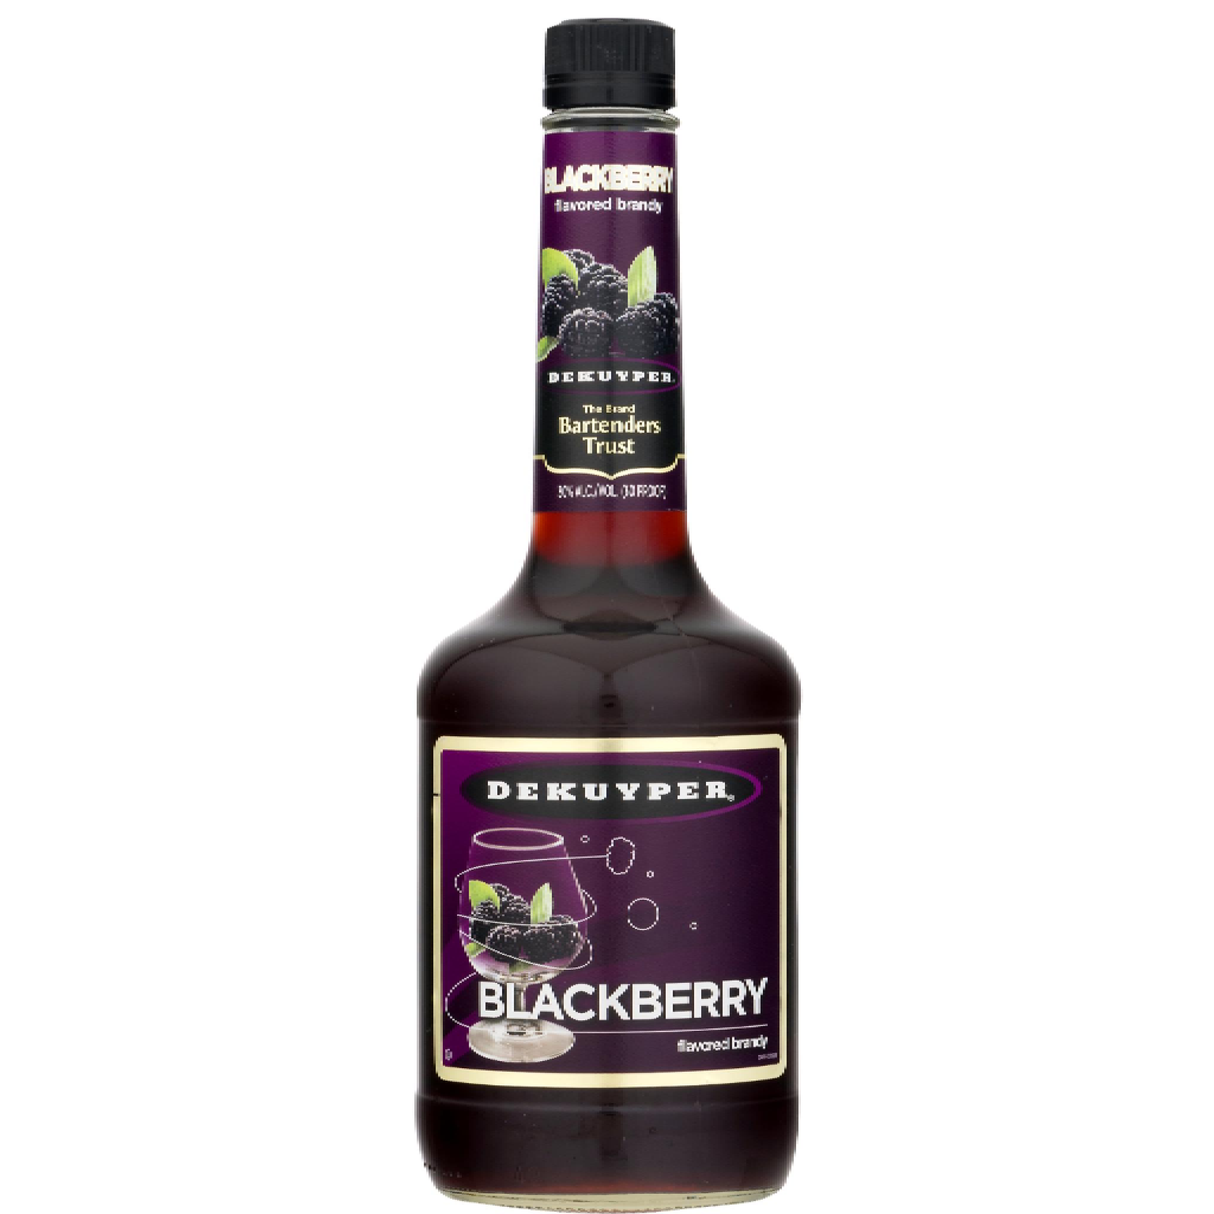 Dekuyper Blackberry Flavored Brandy - Liquor Geeks